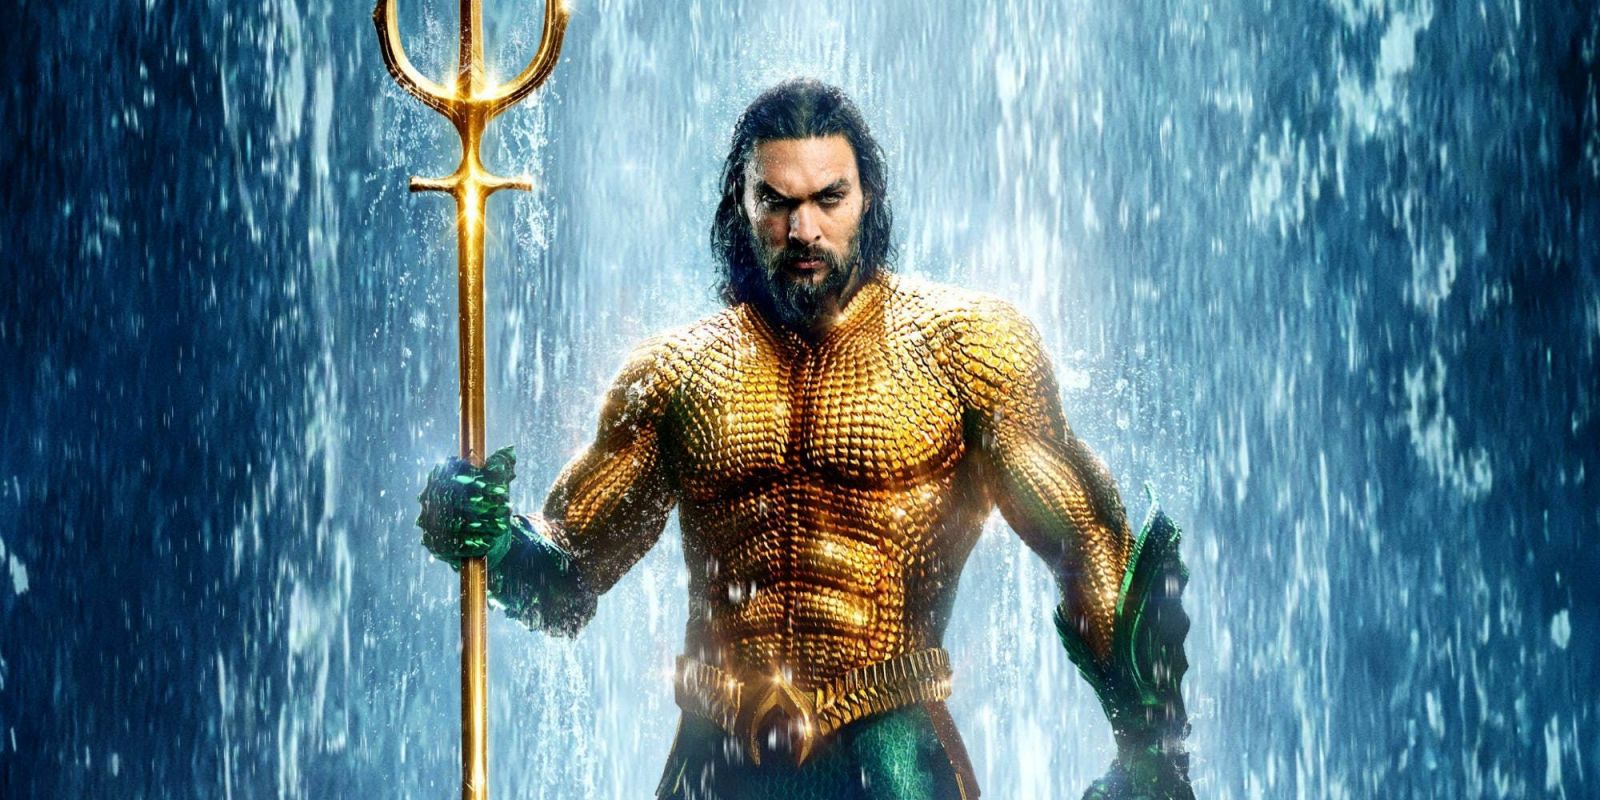 Režisér Aquamana je naštvaný, že film nebude nominovaný na Oscara za vizuálne efekty. Označil to za sk*rvenú hanbu